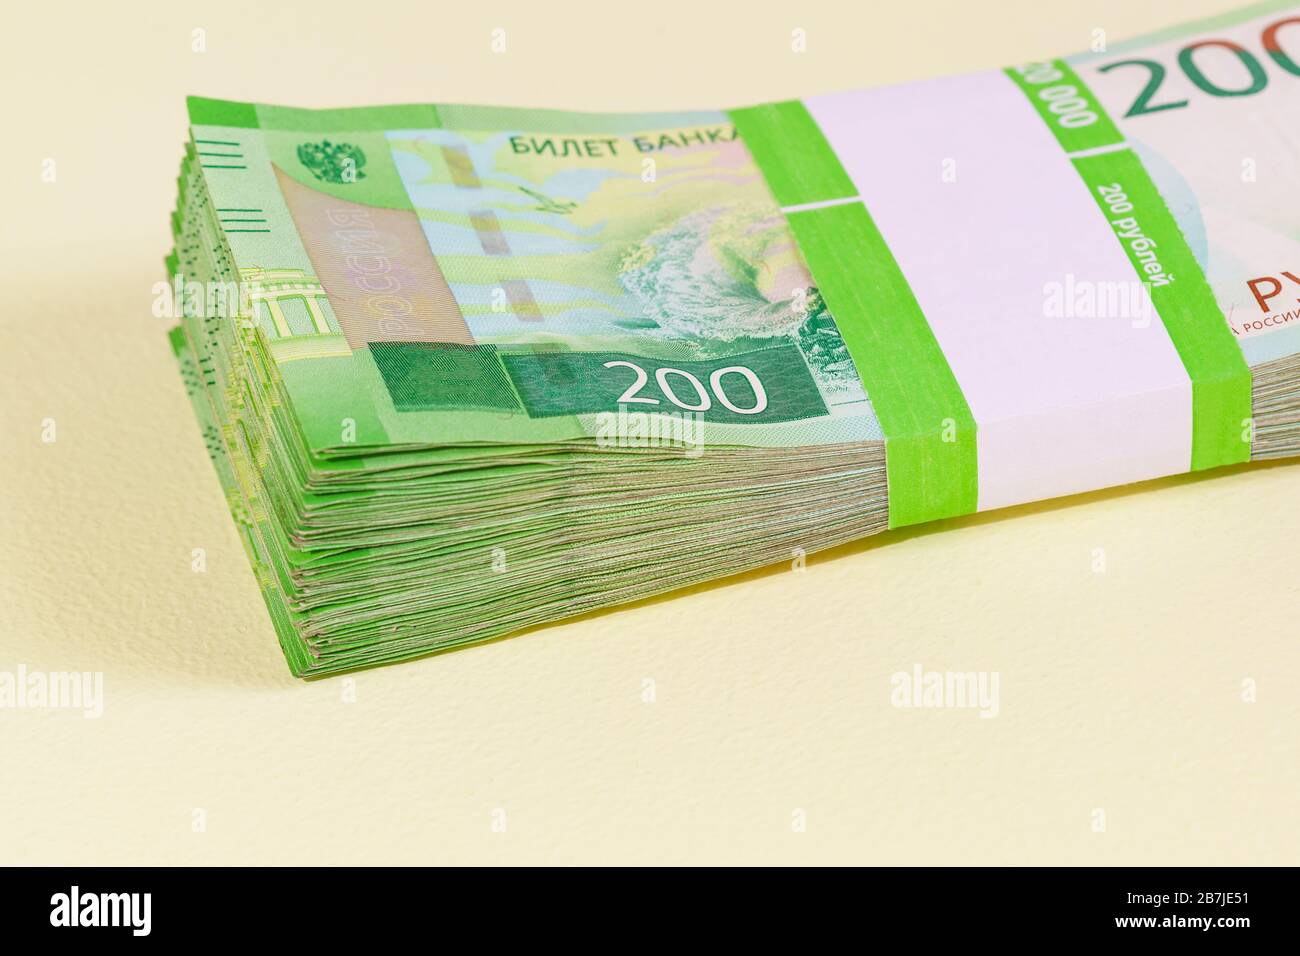 Il pacchetto di banconote di Dvuhmatchevyh nel pacchetto bancario si trova sul tavolo giallo. Investimento Foto Stock